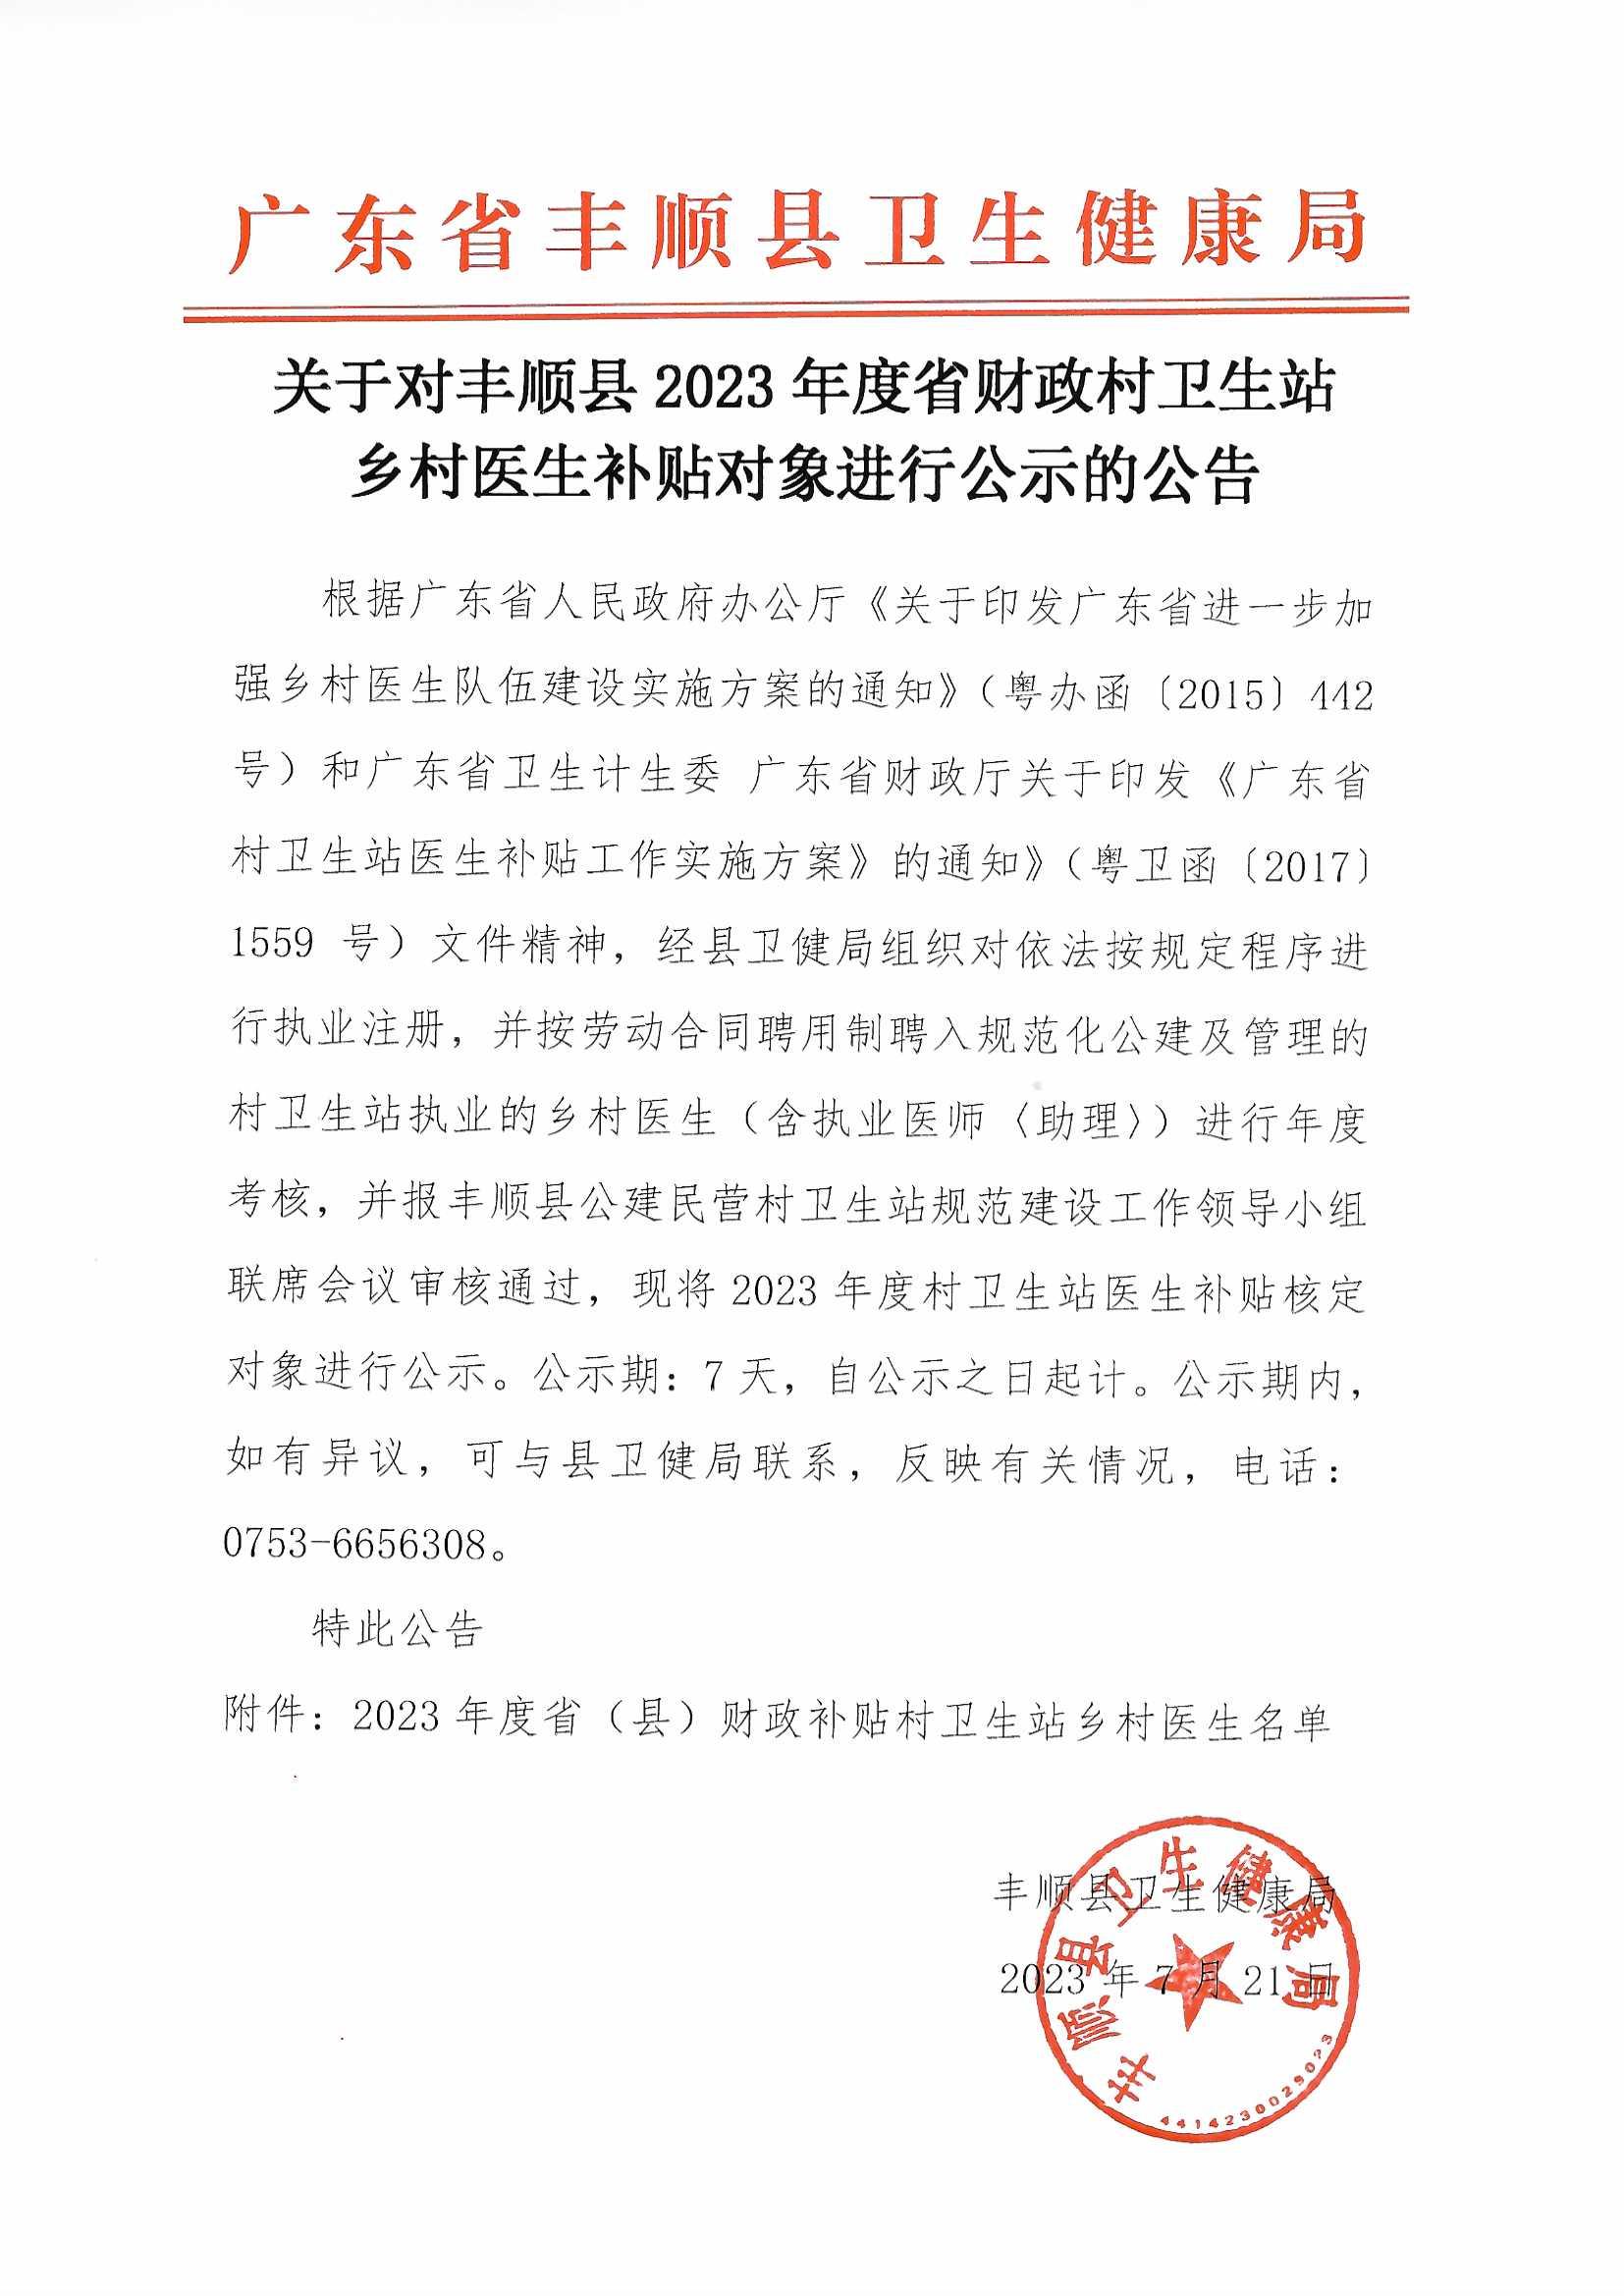 （公示用）关于对丰顺县2023年度省财政村卫生站乡村医生补贴对象进行公示的通知.jpg